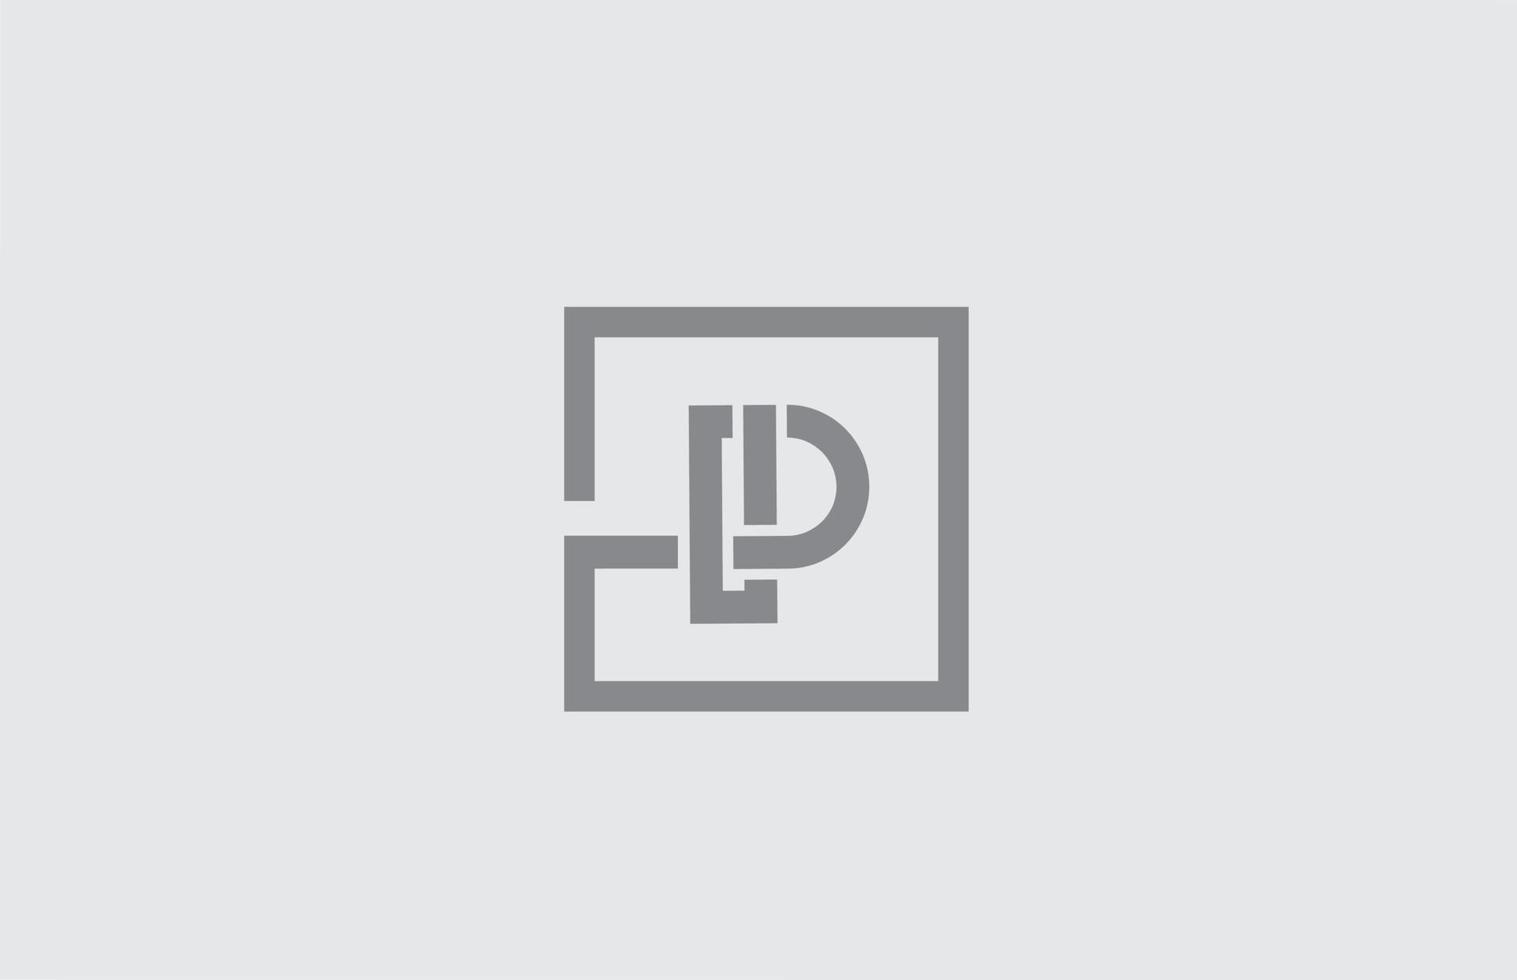 p lijn alfabet letter pictogram logo ontwerp. creatieve sjabloon voor zaken en bedrijf in grijze kleur vector